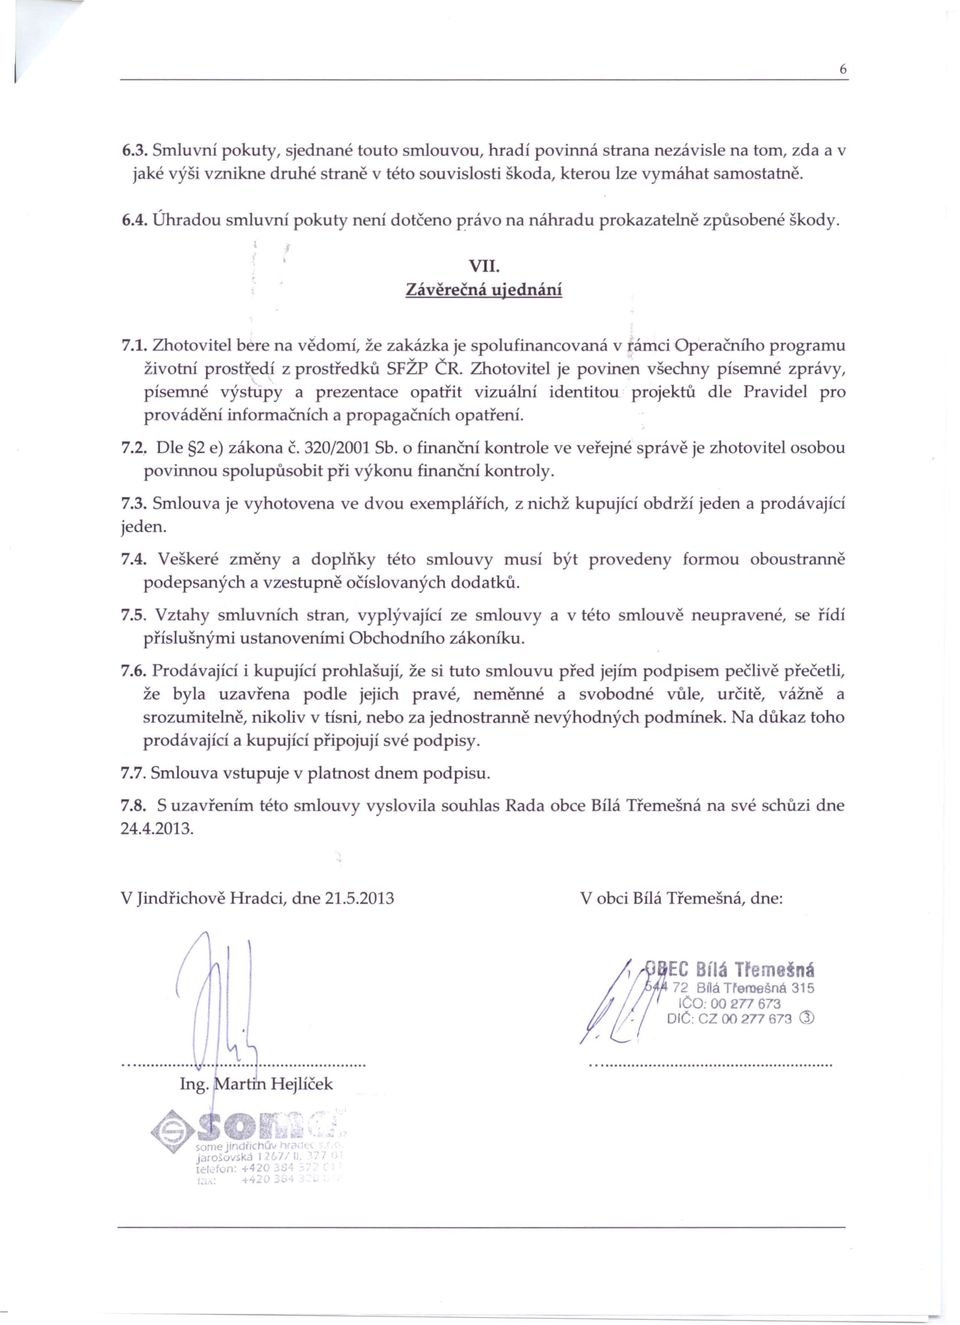 Zhotovitel bere na vědomí, že zakázka je spolufinancovaná v rámci Operačního programu životní prostředí z prostředků SFŽP ČR.